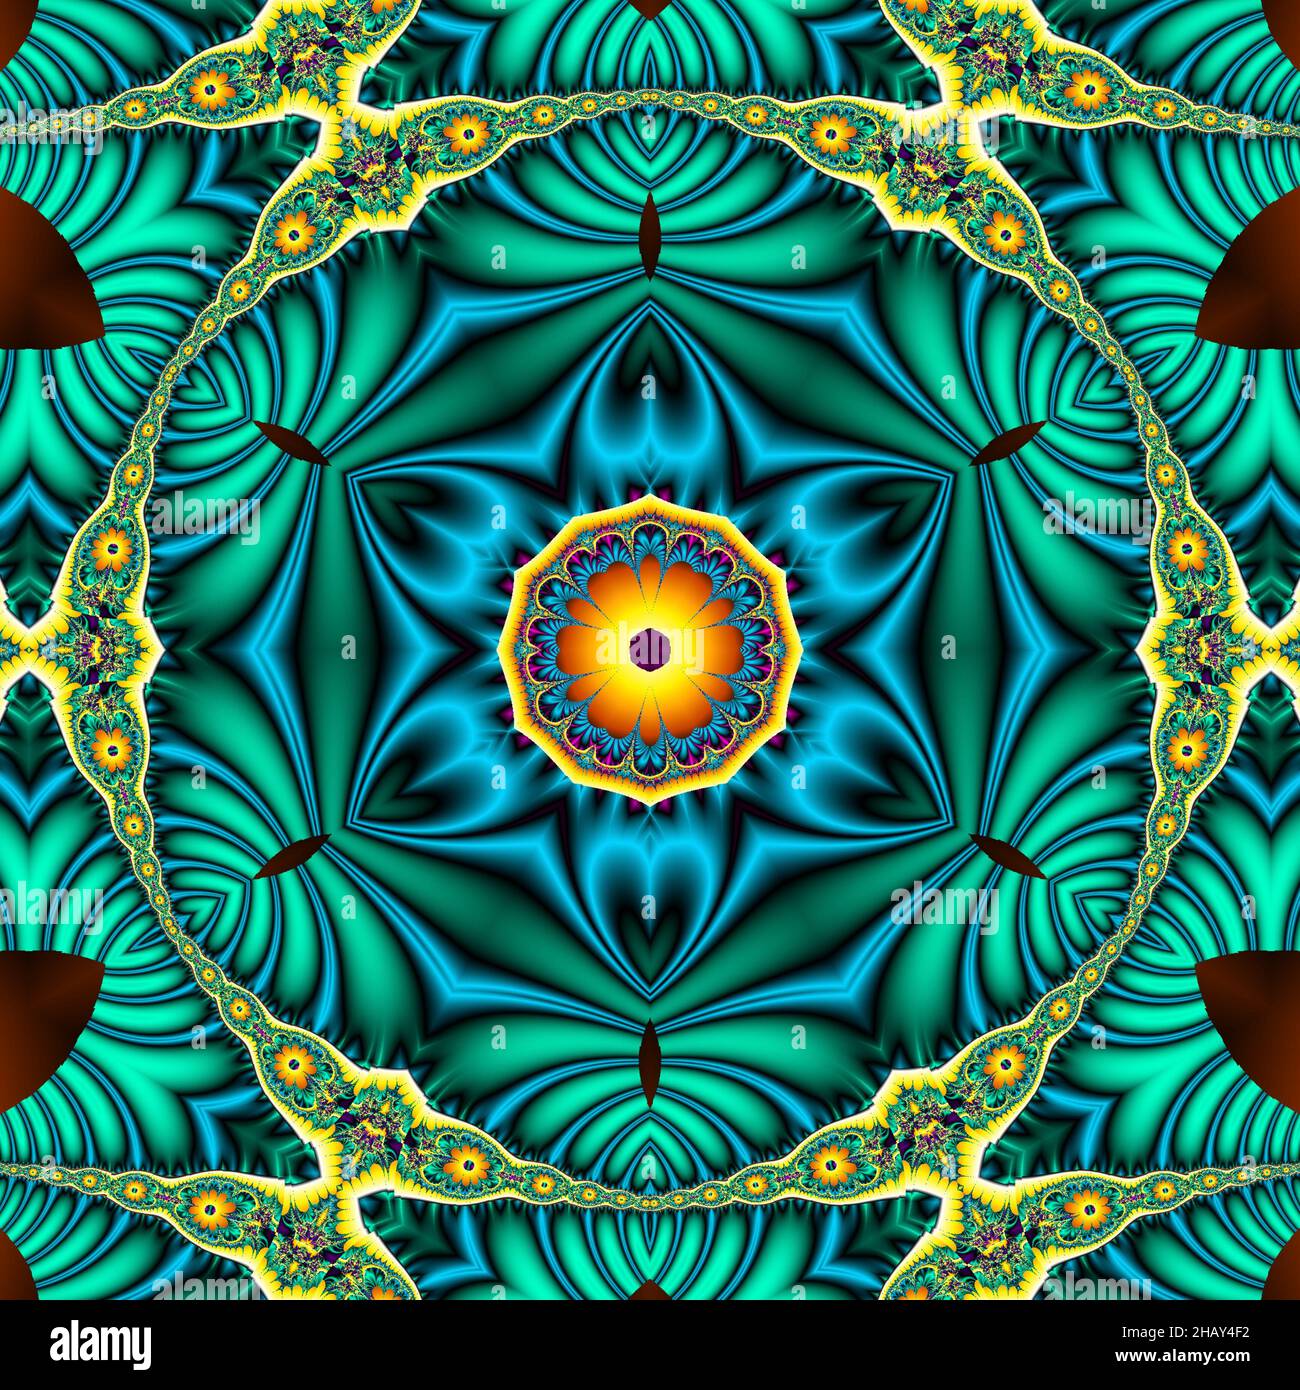 Handgezeichnete Mandala-Kunst mit ethnischem floralem Doodle-Muster. Malvorlagen - kaindala, spirituelle Entspannung für Erwachsene, Vektor-Illustration, isoliert auf Stockfoto